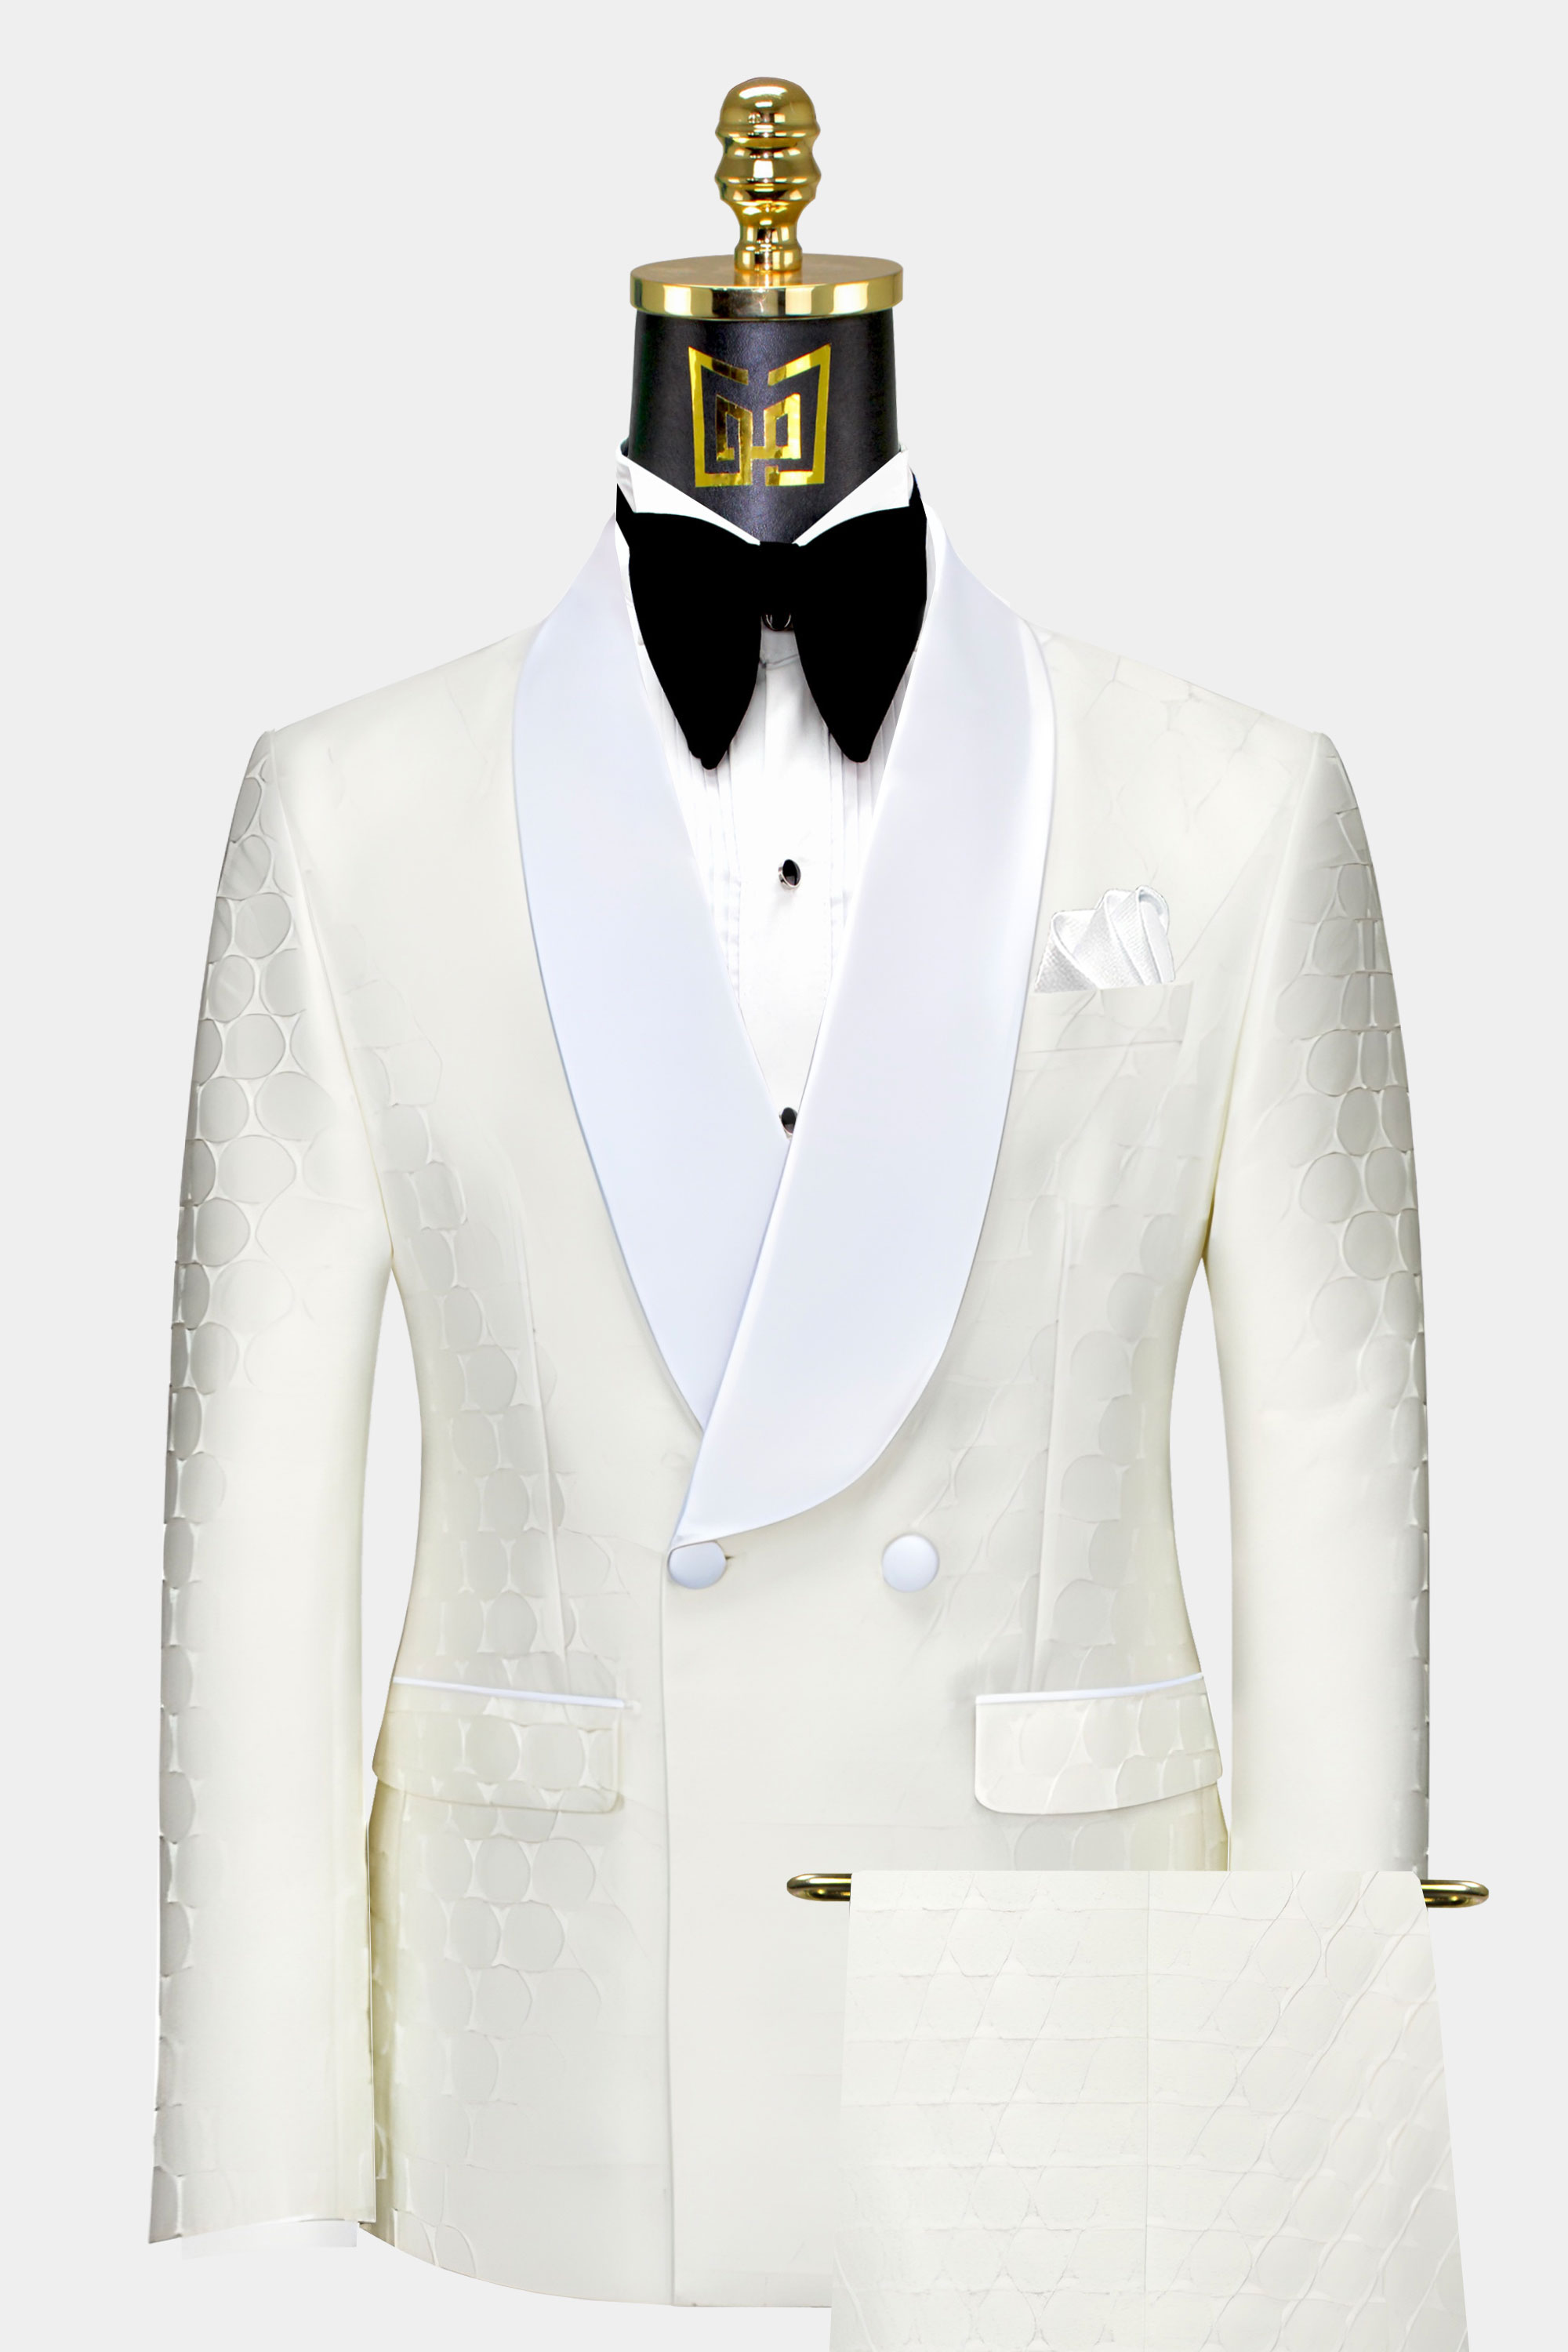 Men's Wedding Suits & Groom's Tuxedos